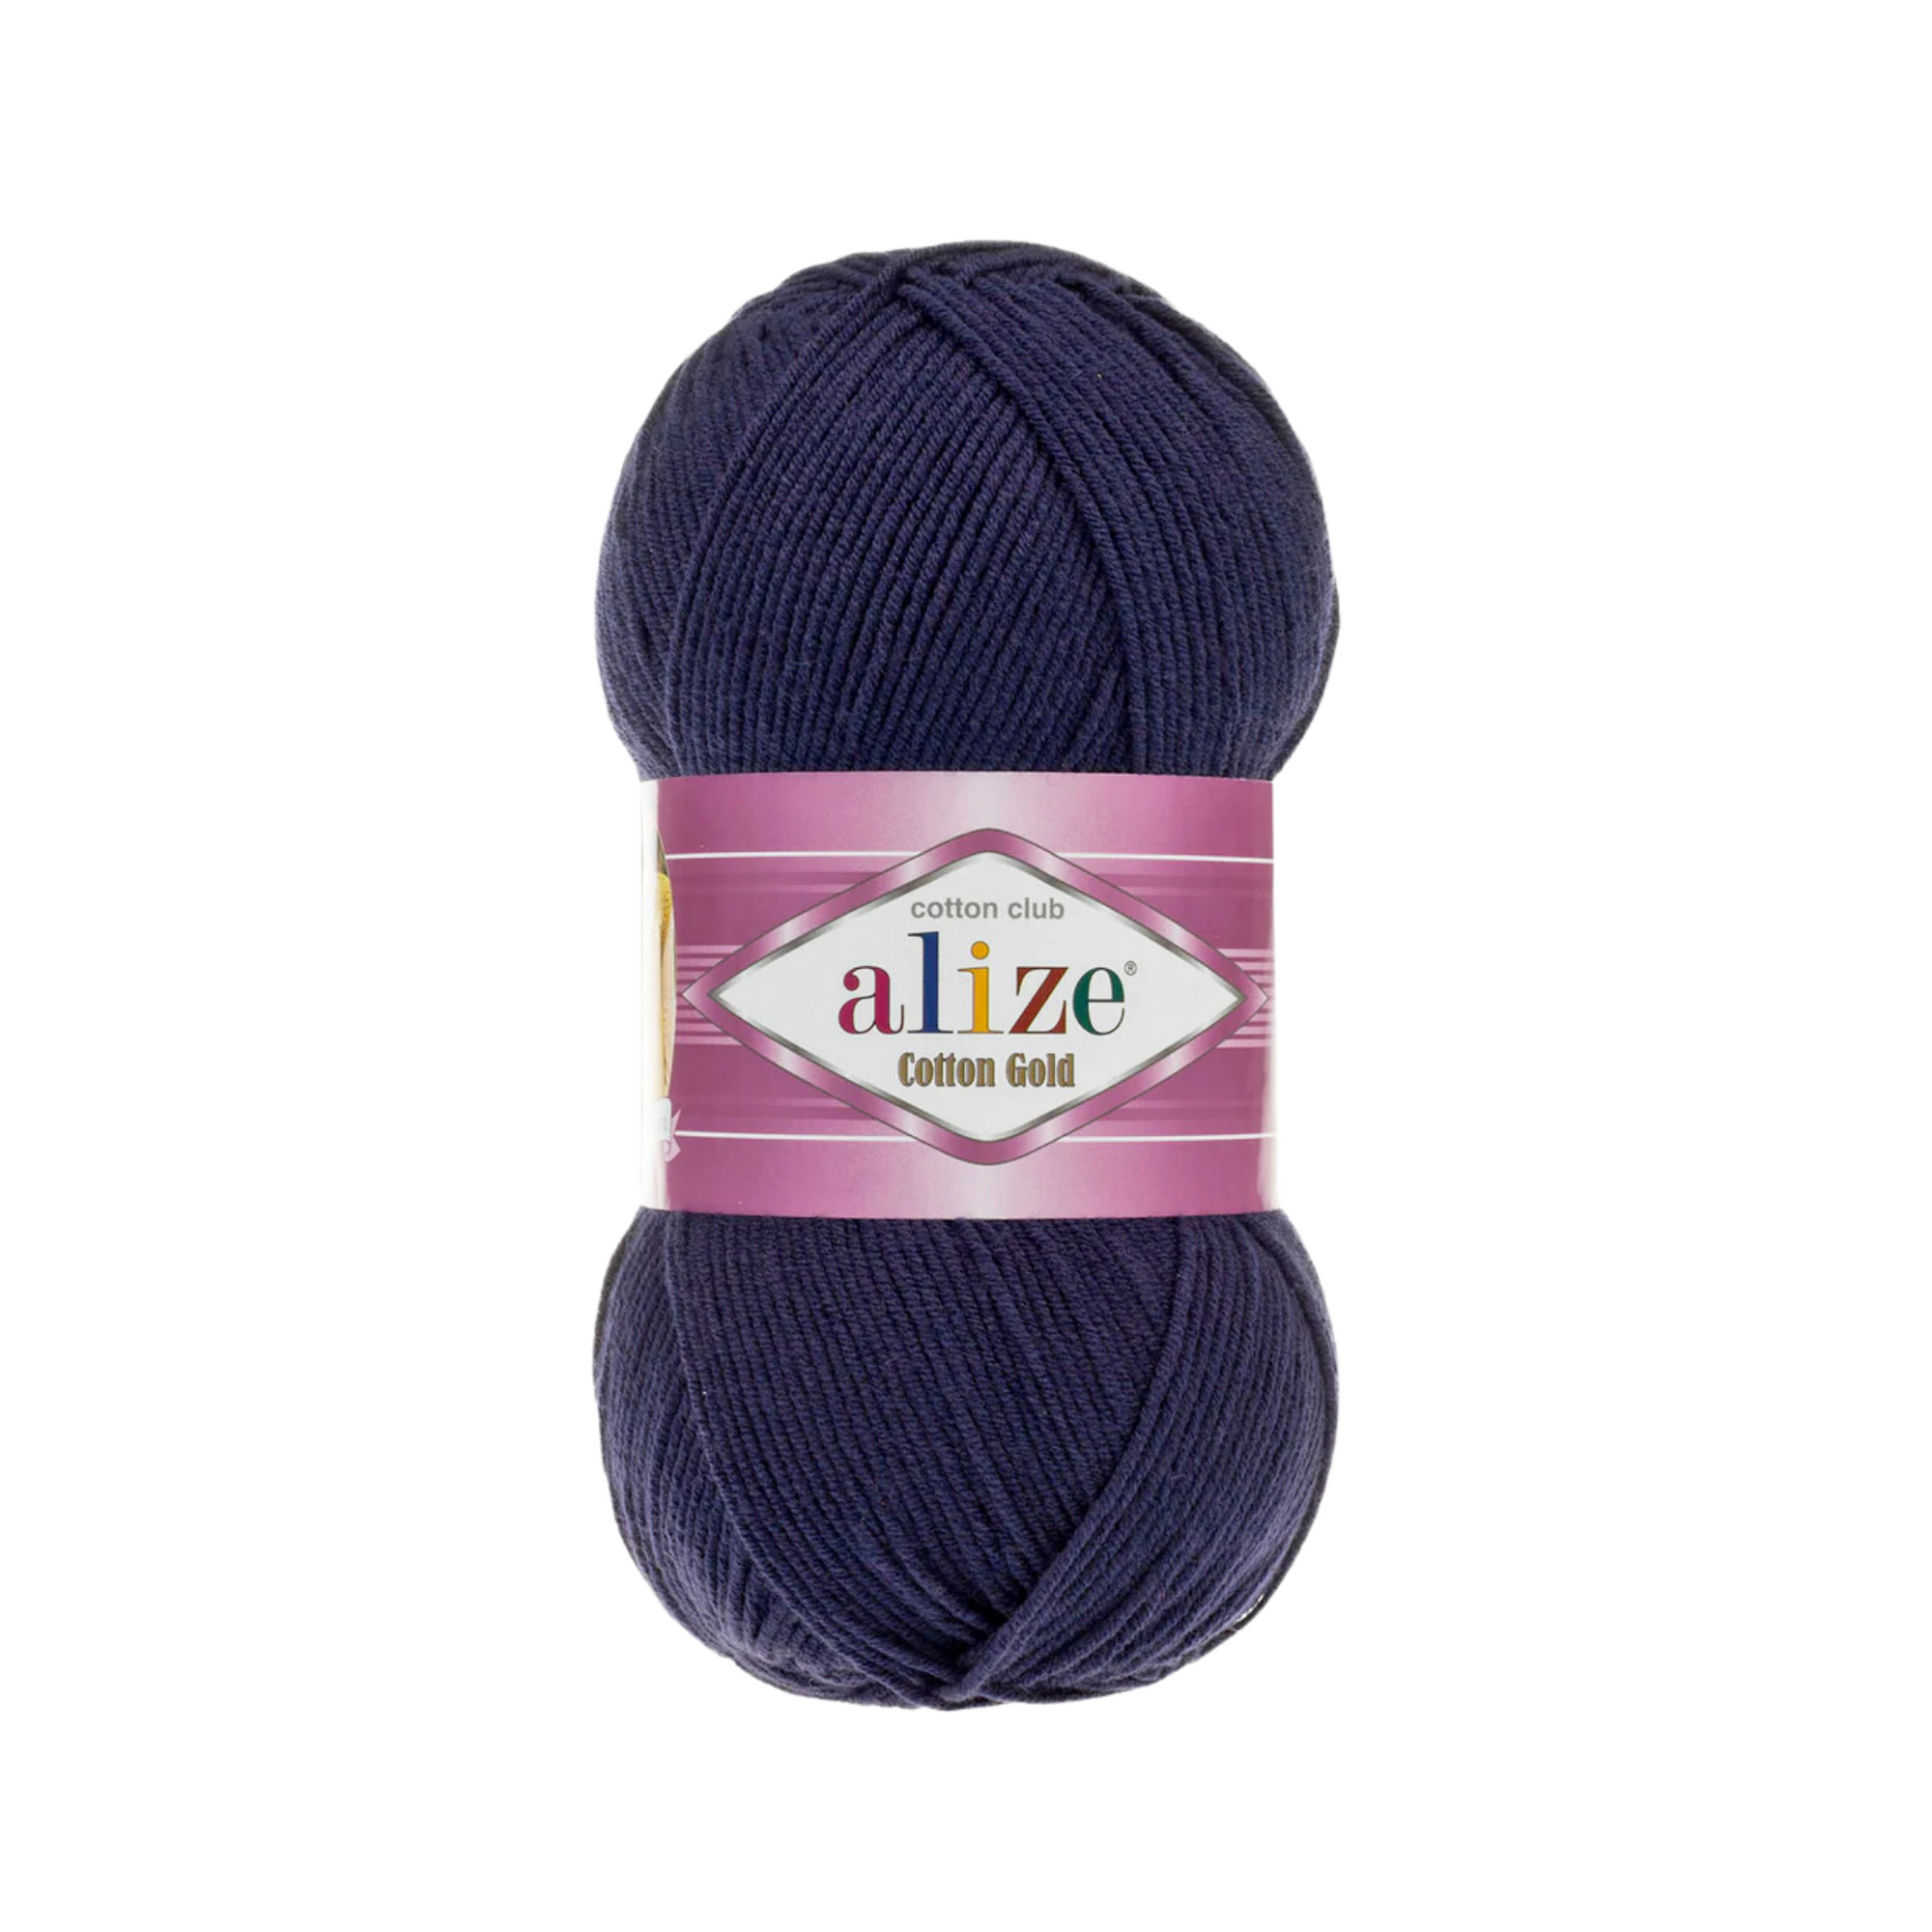 Alize Cotton Gold Knitting Yarn, Navy Blue - 58